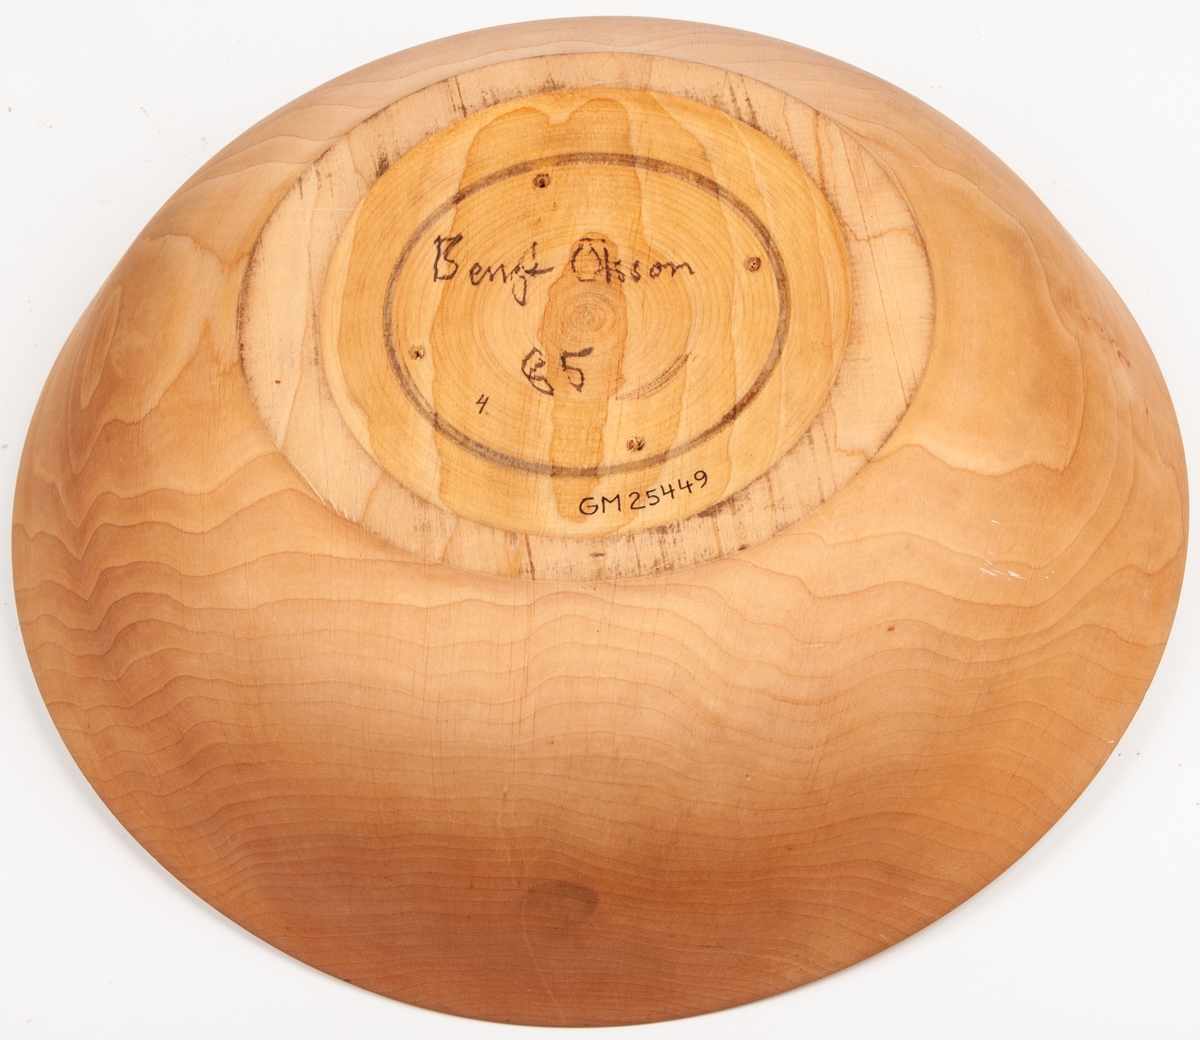 Träskål, svarvad, med mjukt rundade sidor, något ojämn i höjd och rundning. Ev oljad. Signerad med blyerts i botten: "Bengt Olsson 85".